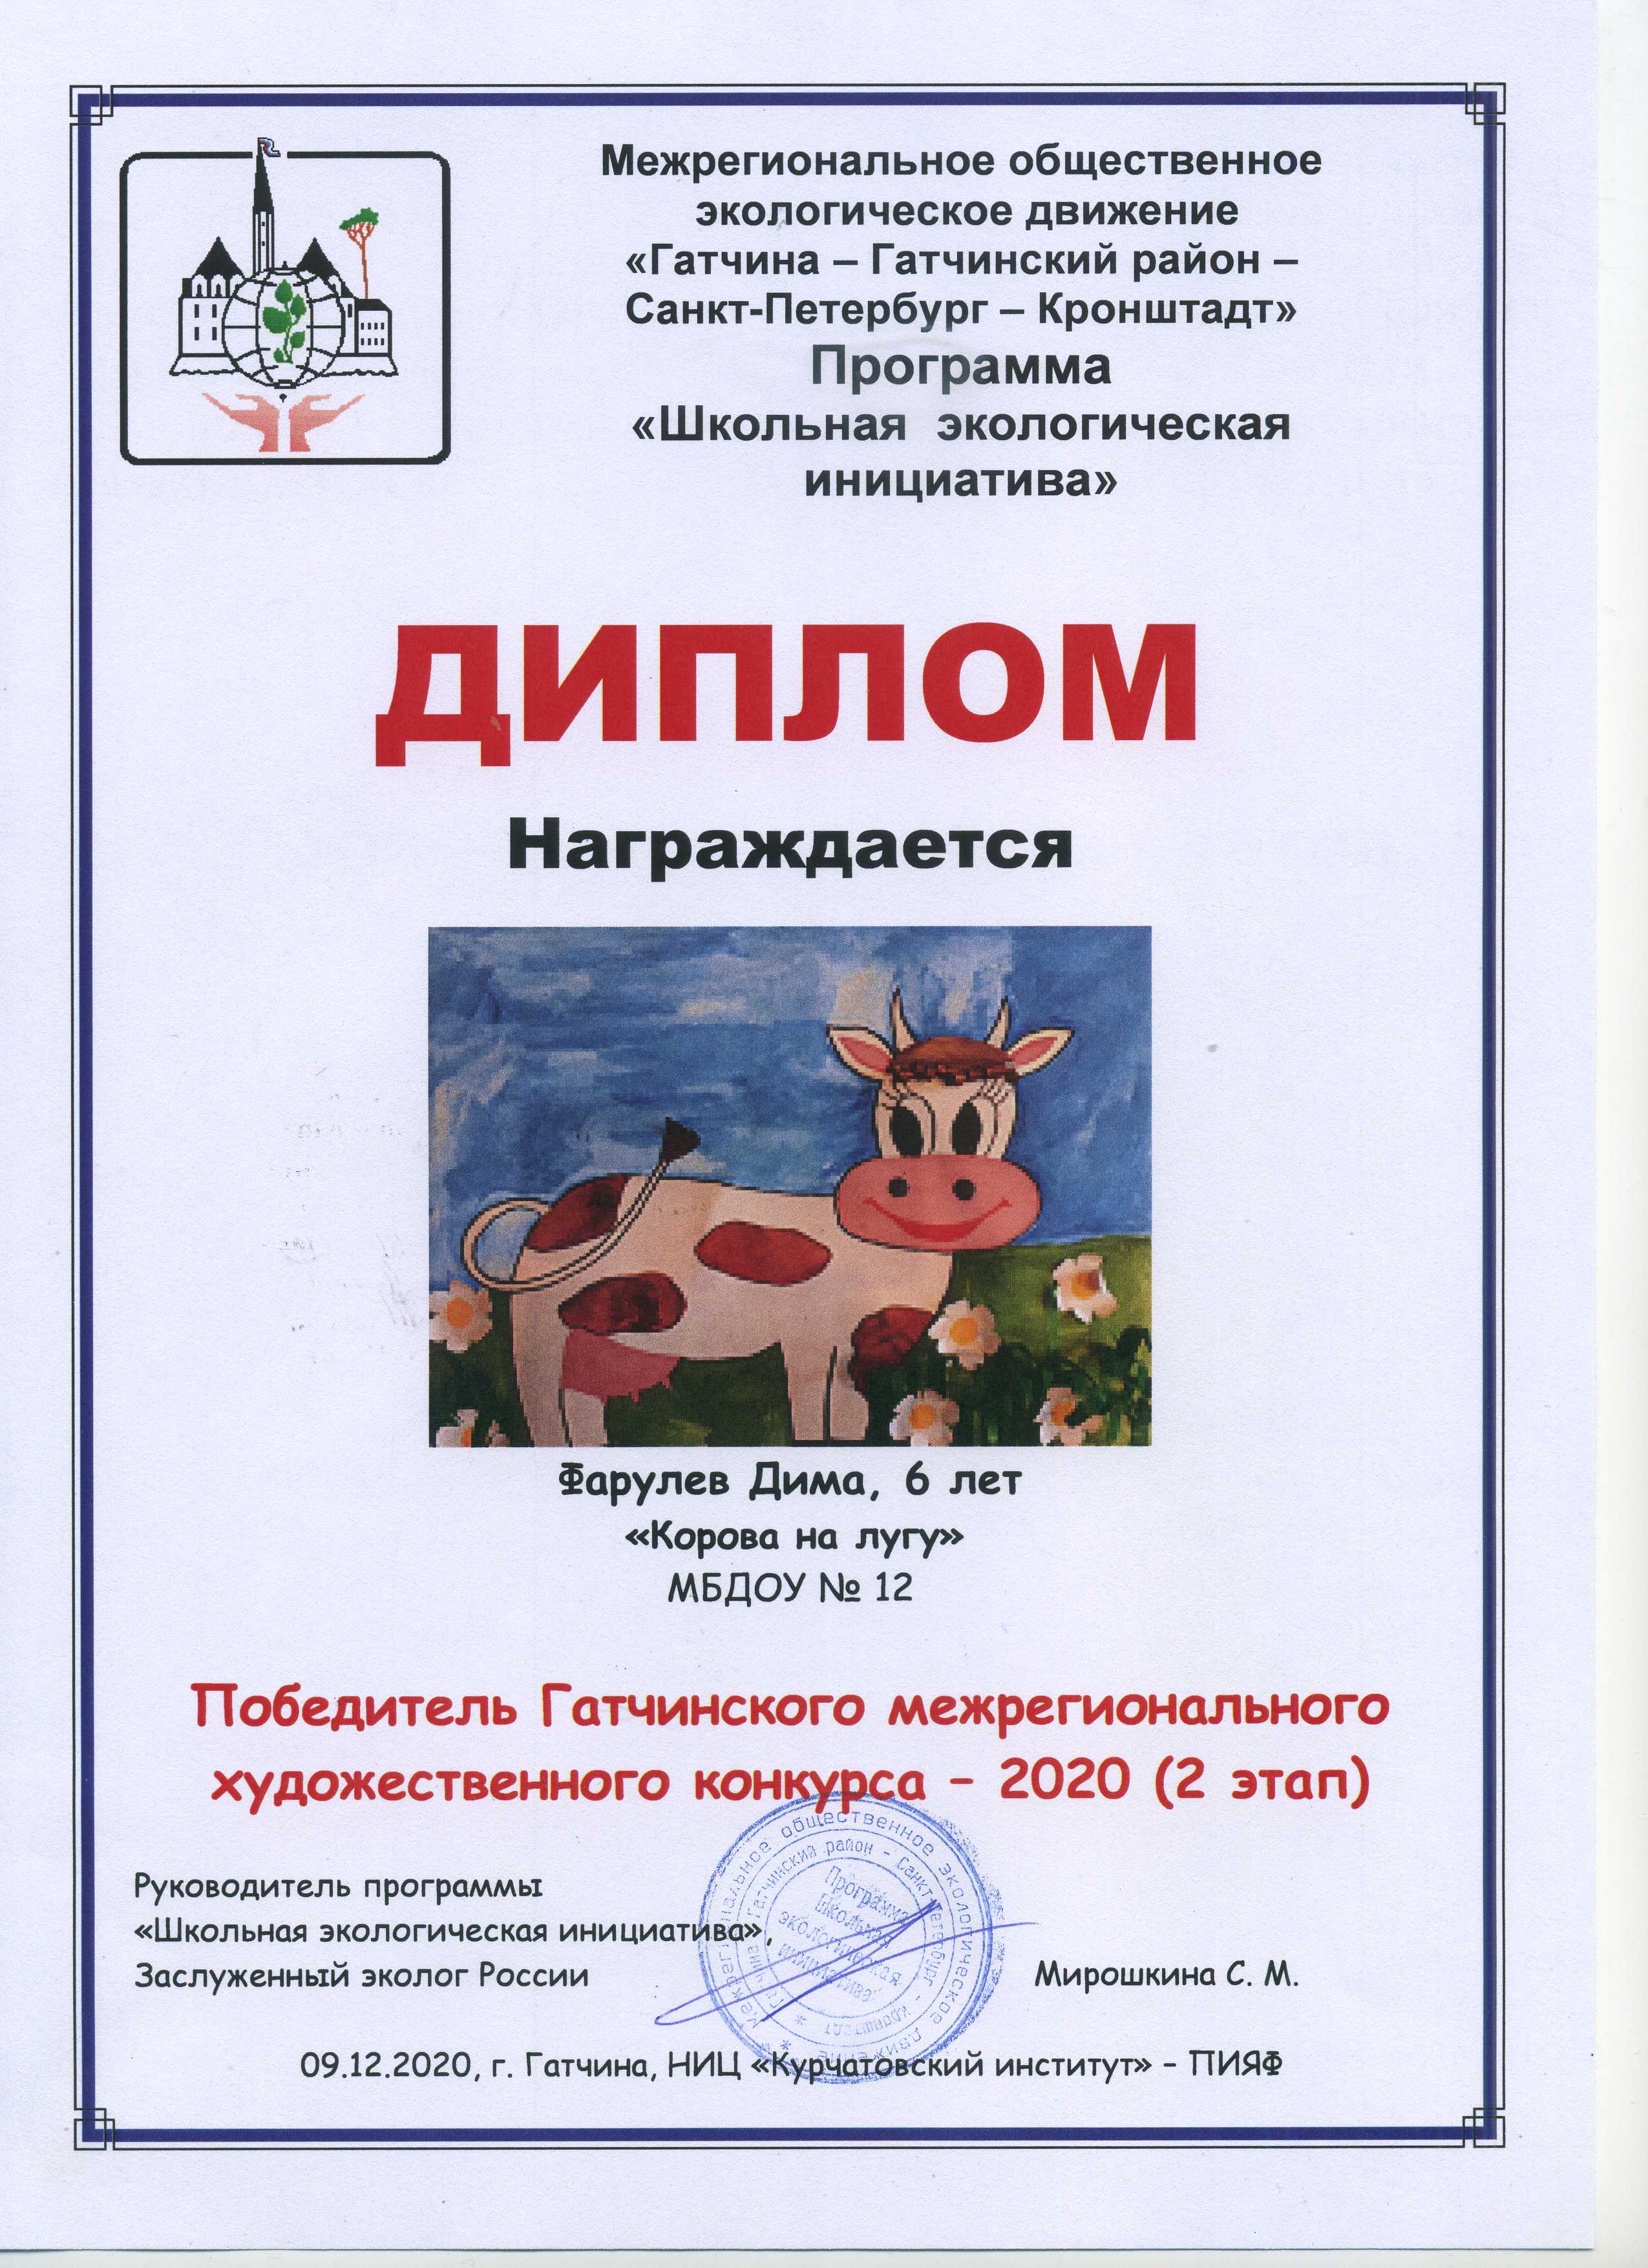 Фарулев Дима "Корова на лугу"